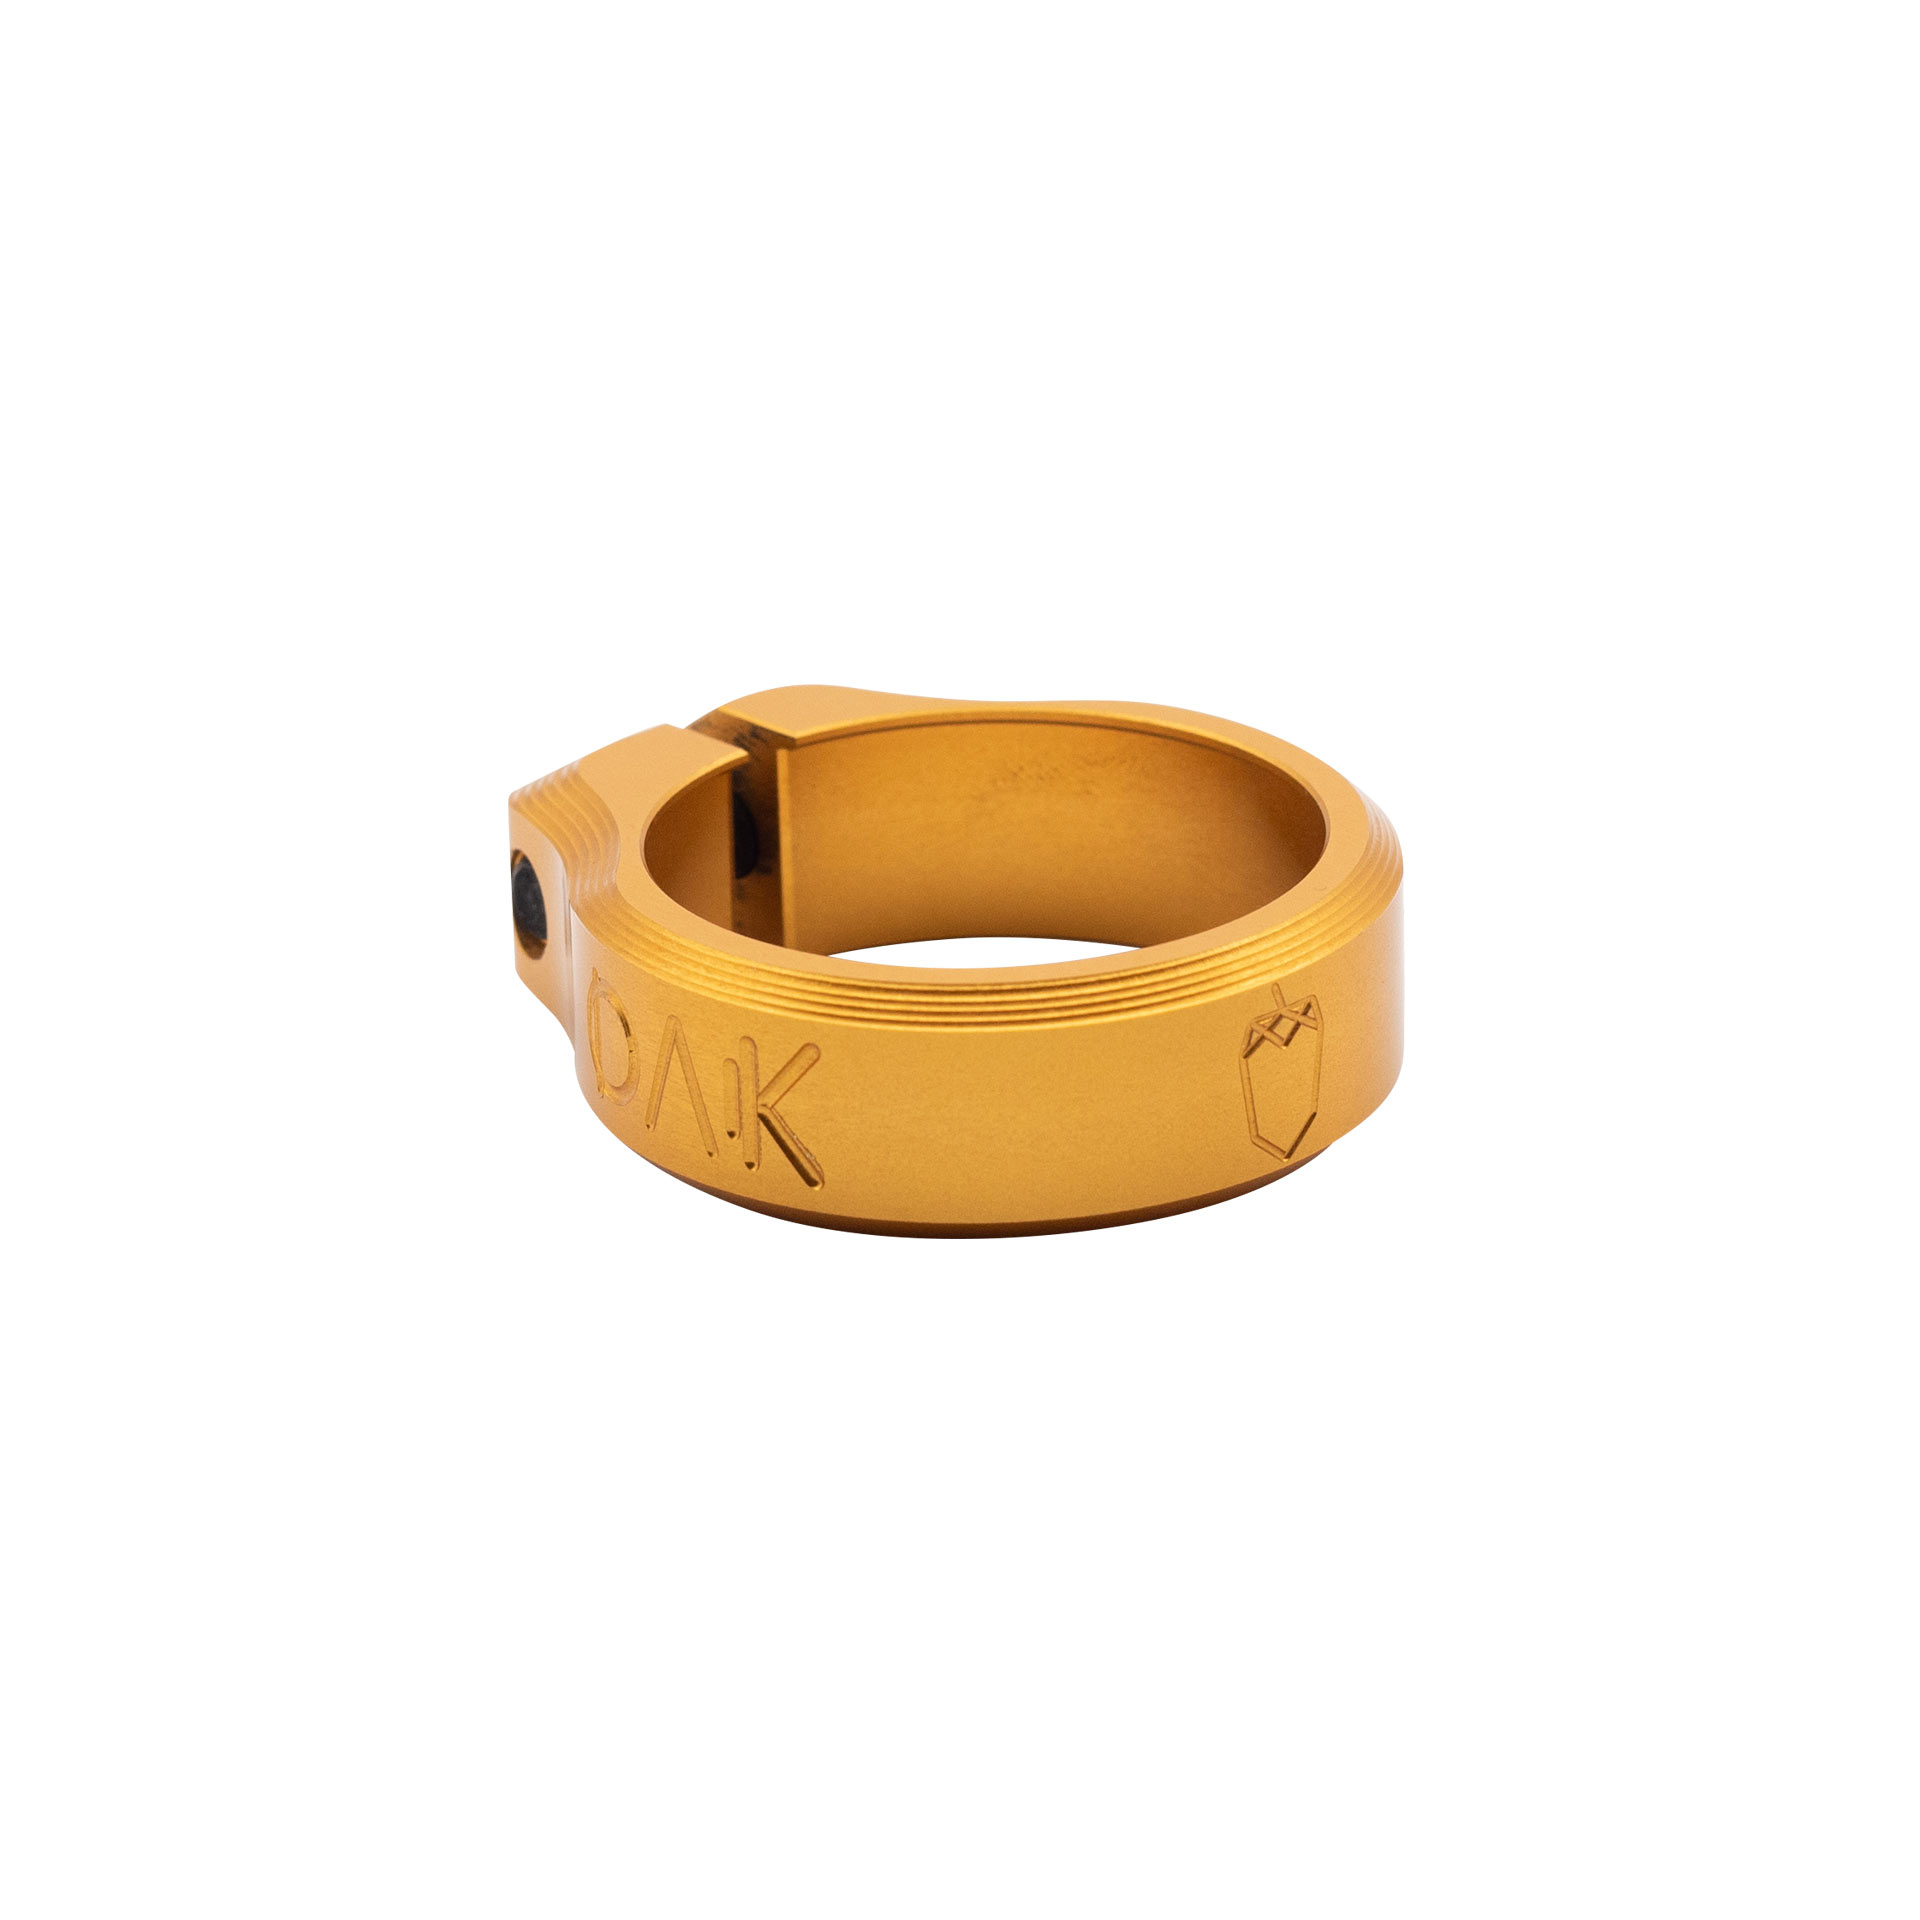 Orbit Seatclamp - 38.5 mm - gold